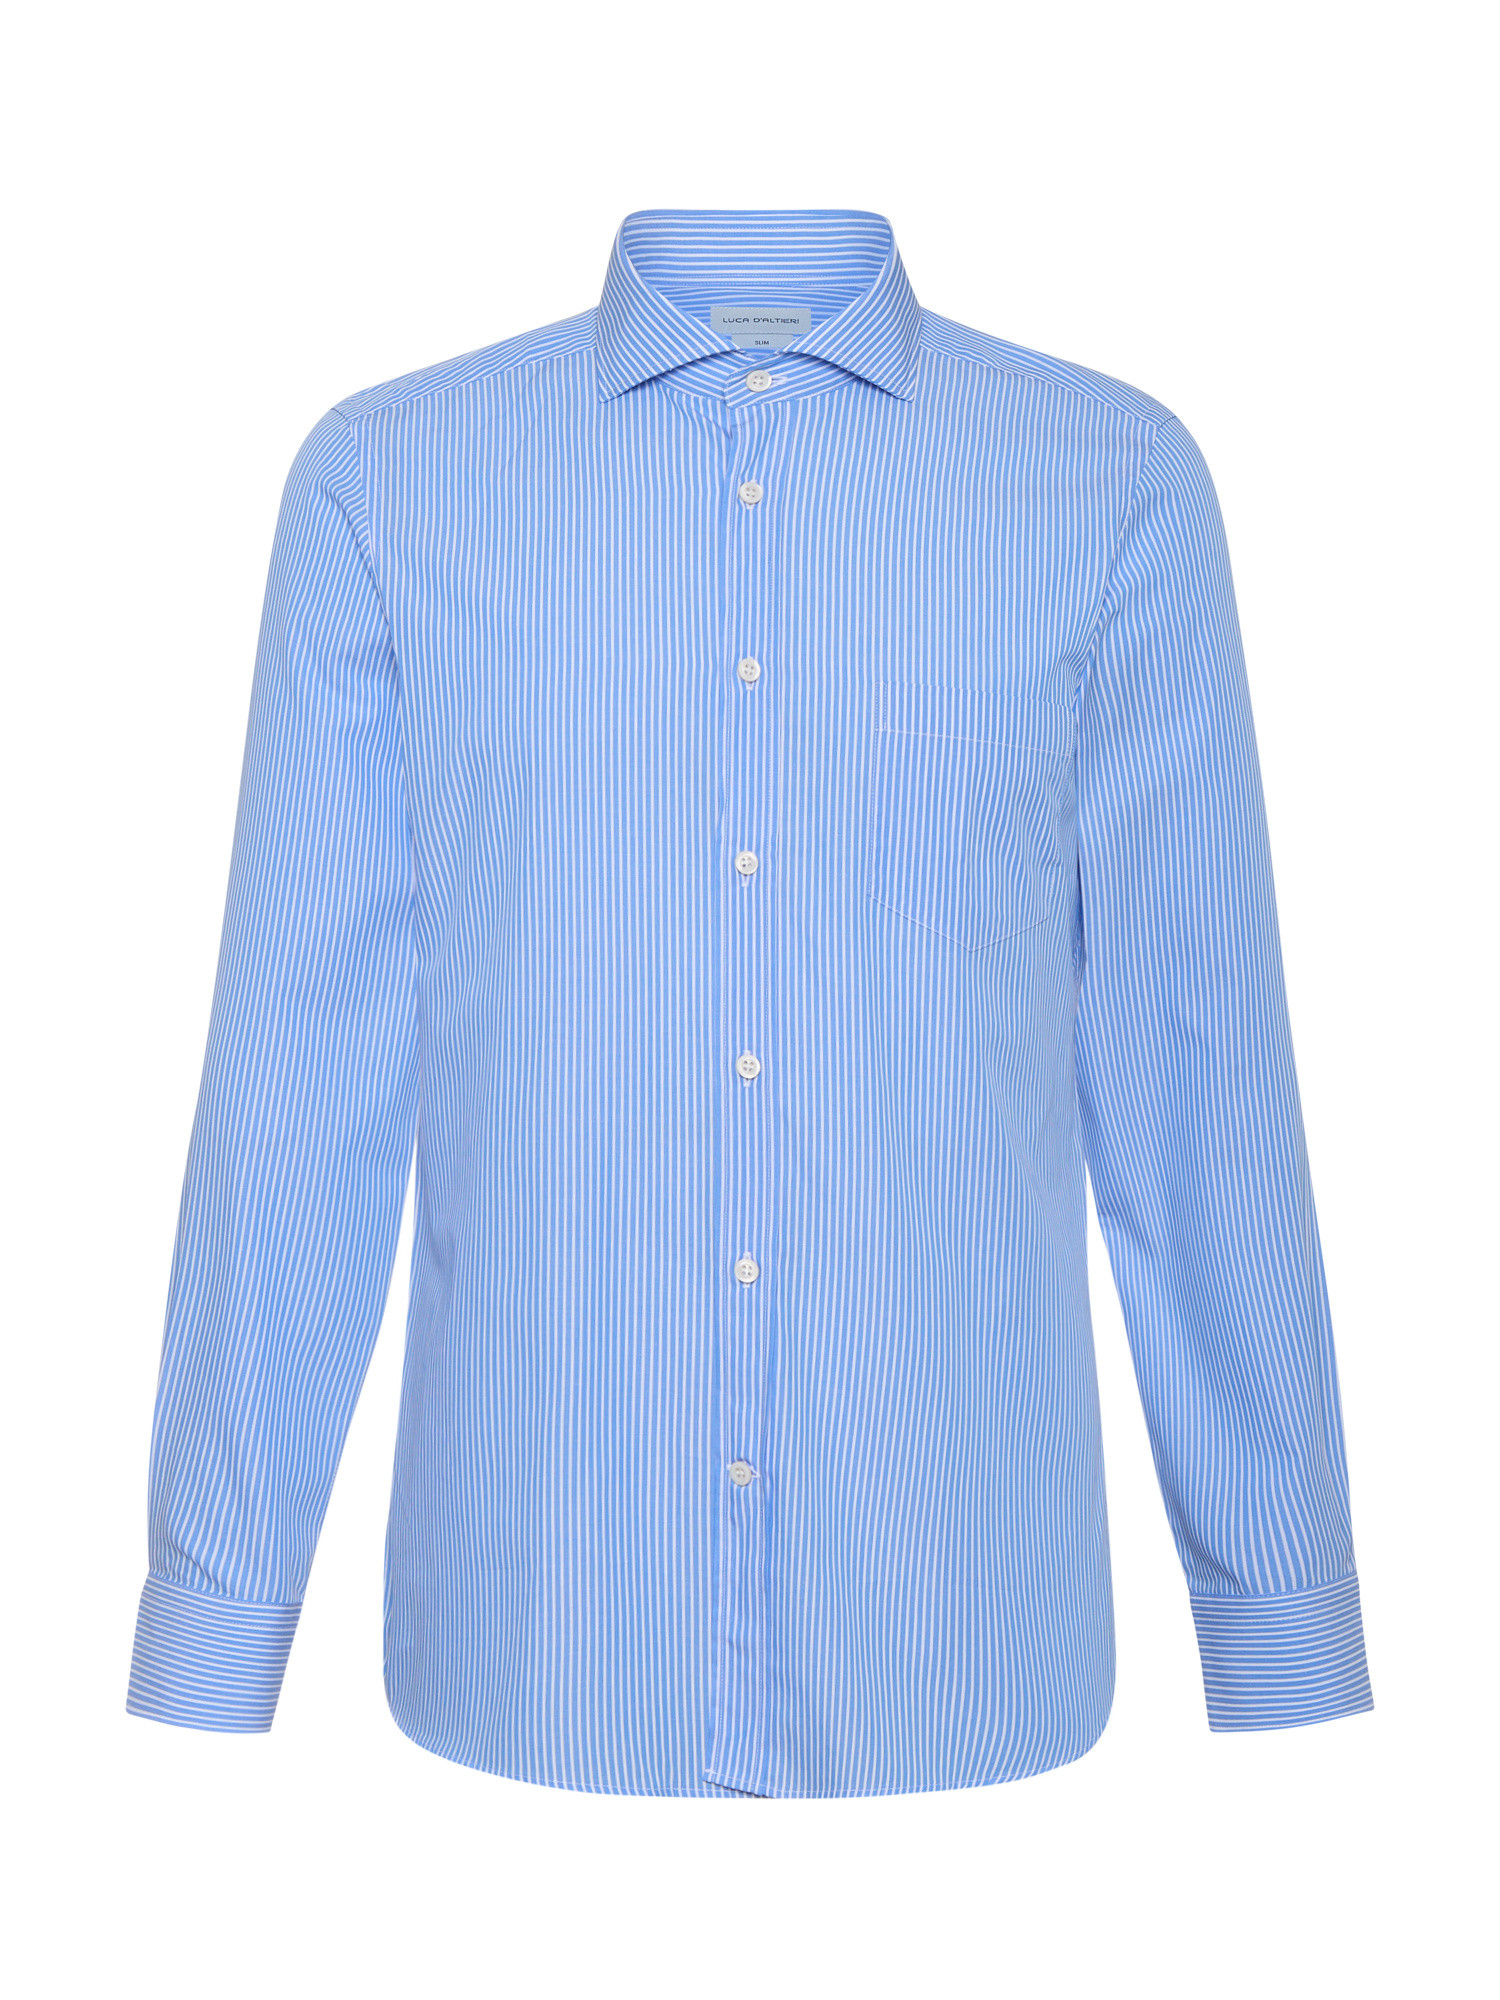 Luca D'Altieri - Camicia casual slim fit in popeline di puro cotone, Azzurro chiaro, large image number 1